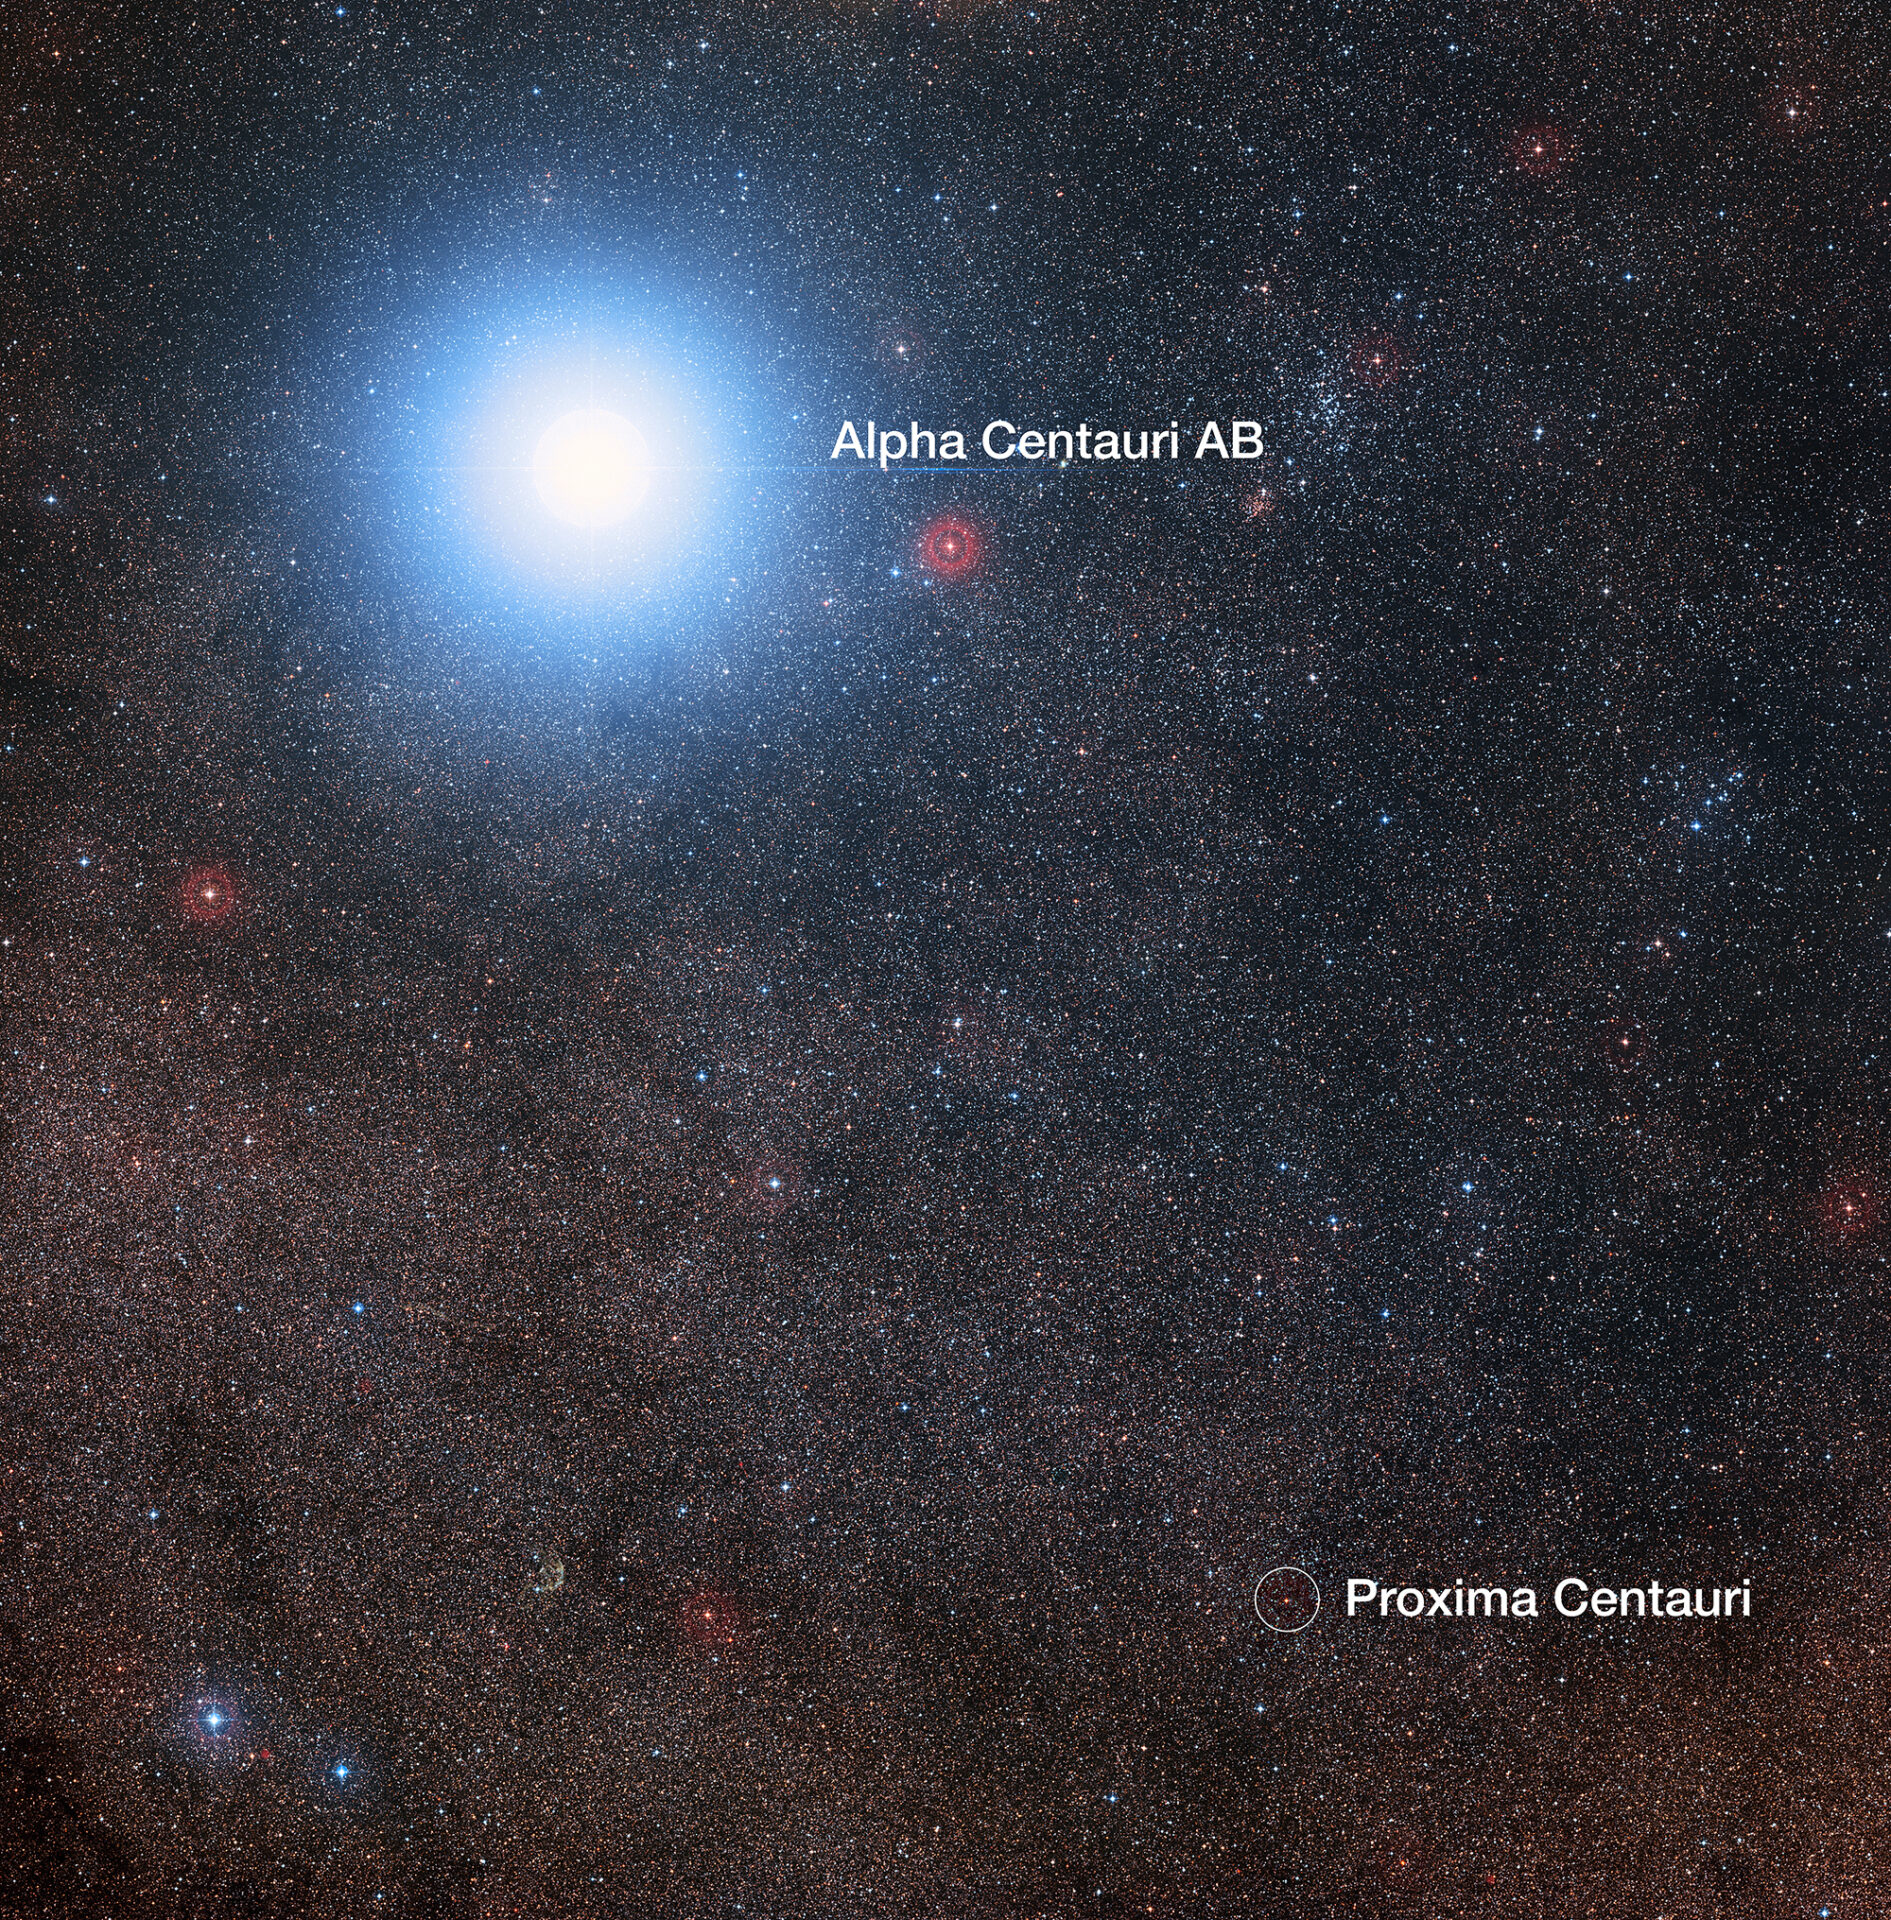 <p>En esta imagen del cielo que rodea a la brillante estrella Alfa Centauri AB también vemos a Próxima Centauri, una estrella enana roja mucho más débil que es, además, la estrella más cercana al Sistema Solar. El montaje fue creado a partir de imágenes que forman parte del sondeo Digitized Sky Survey 2. El halo azul alrededor de Alfa Centauri AB es un artefacto del proceso fotográfico, en realidad la estrella es de color amarillo pálido, como el Sol. Crédito: Digitized Sky Survey 2 | Reconocimiento: Davide De Martin/Mahdi Zamani</p>
